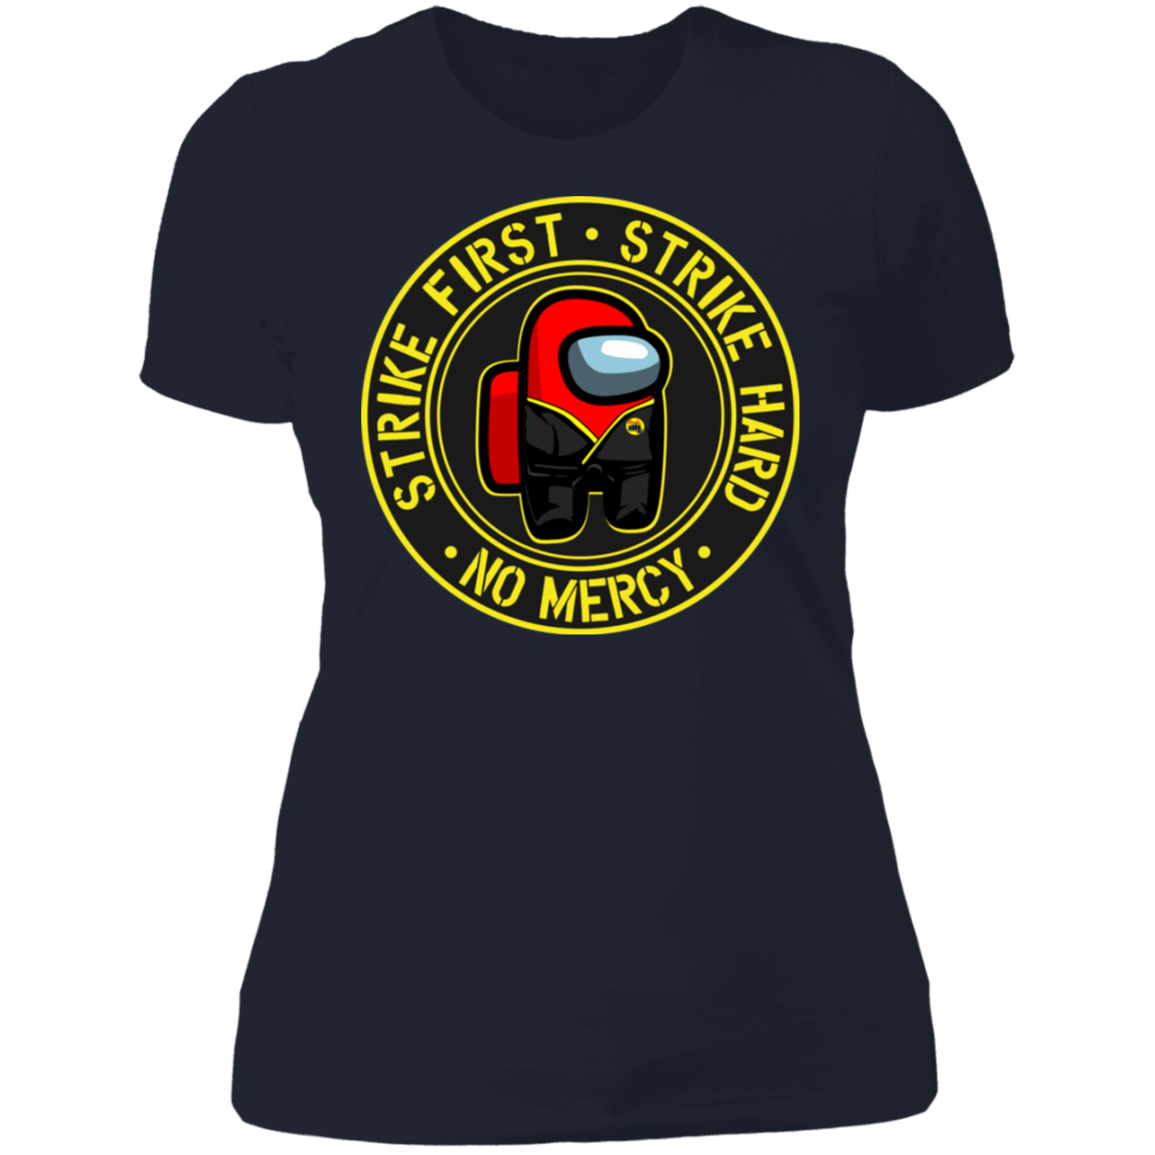 T-Shirts Midnight Navy / S Cobra Crewmate Women's Premium T-Shirt